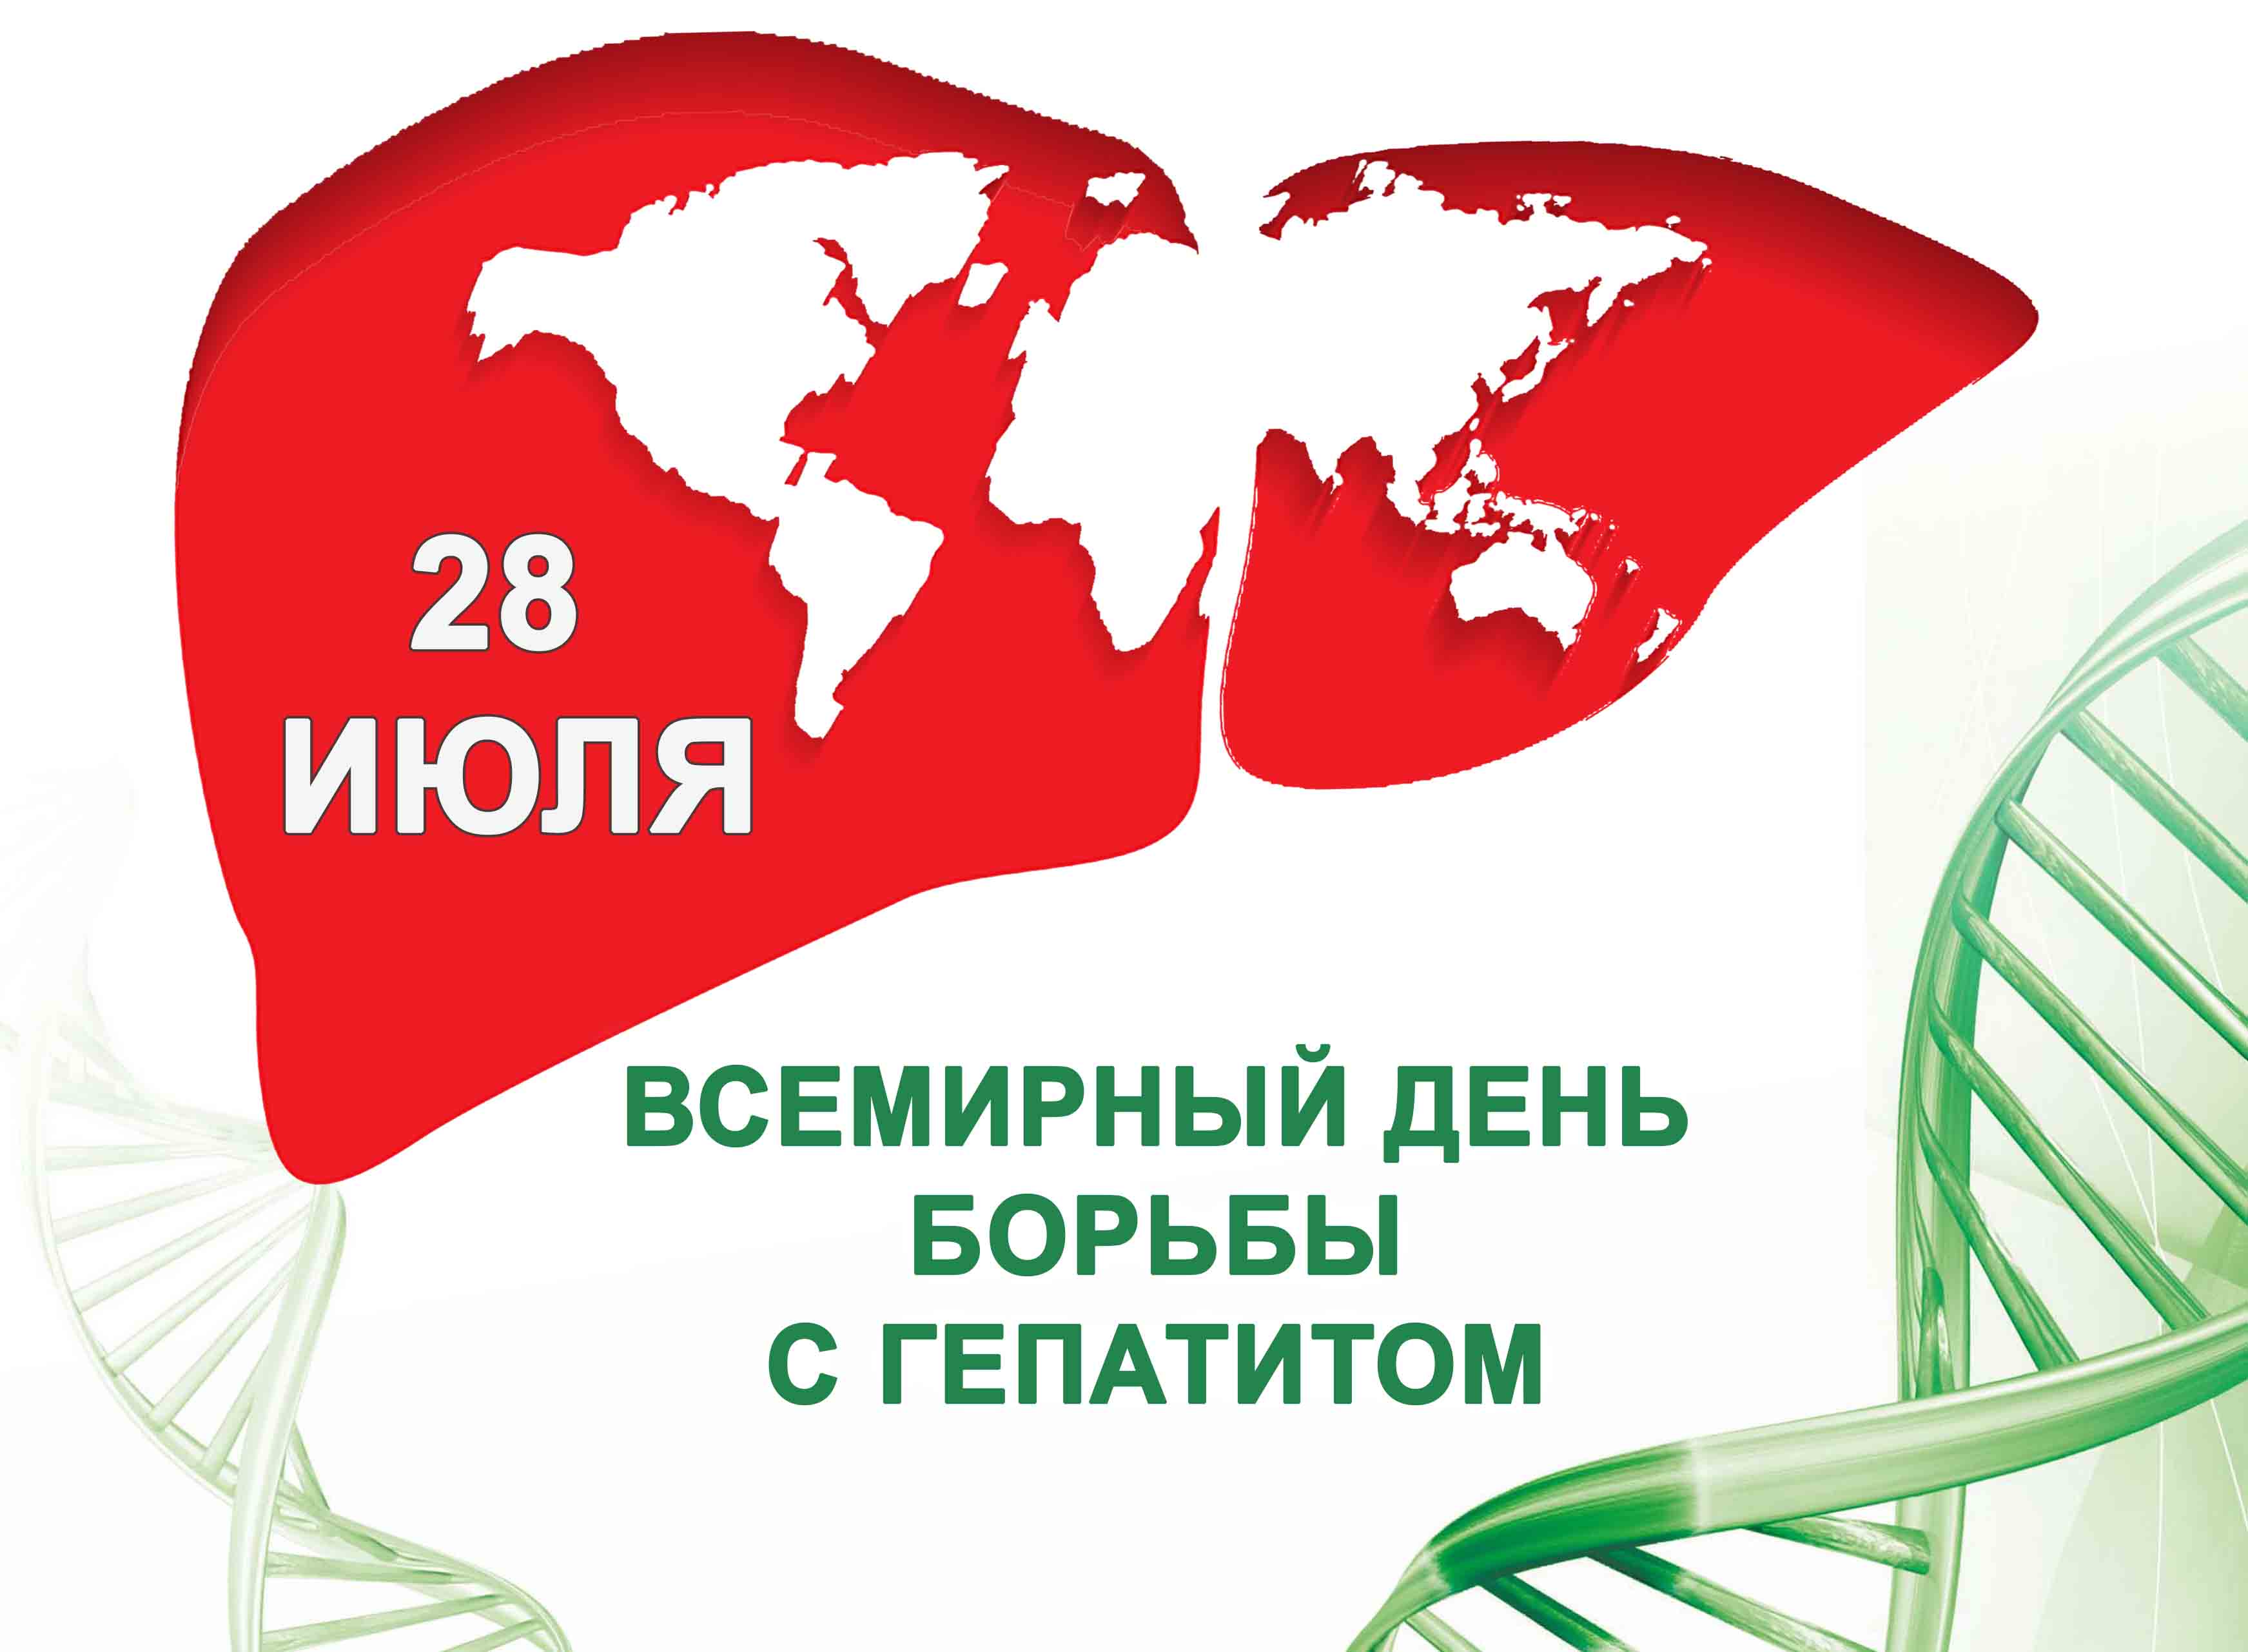 28 июля — Всемирный день борьбы с гепатитом